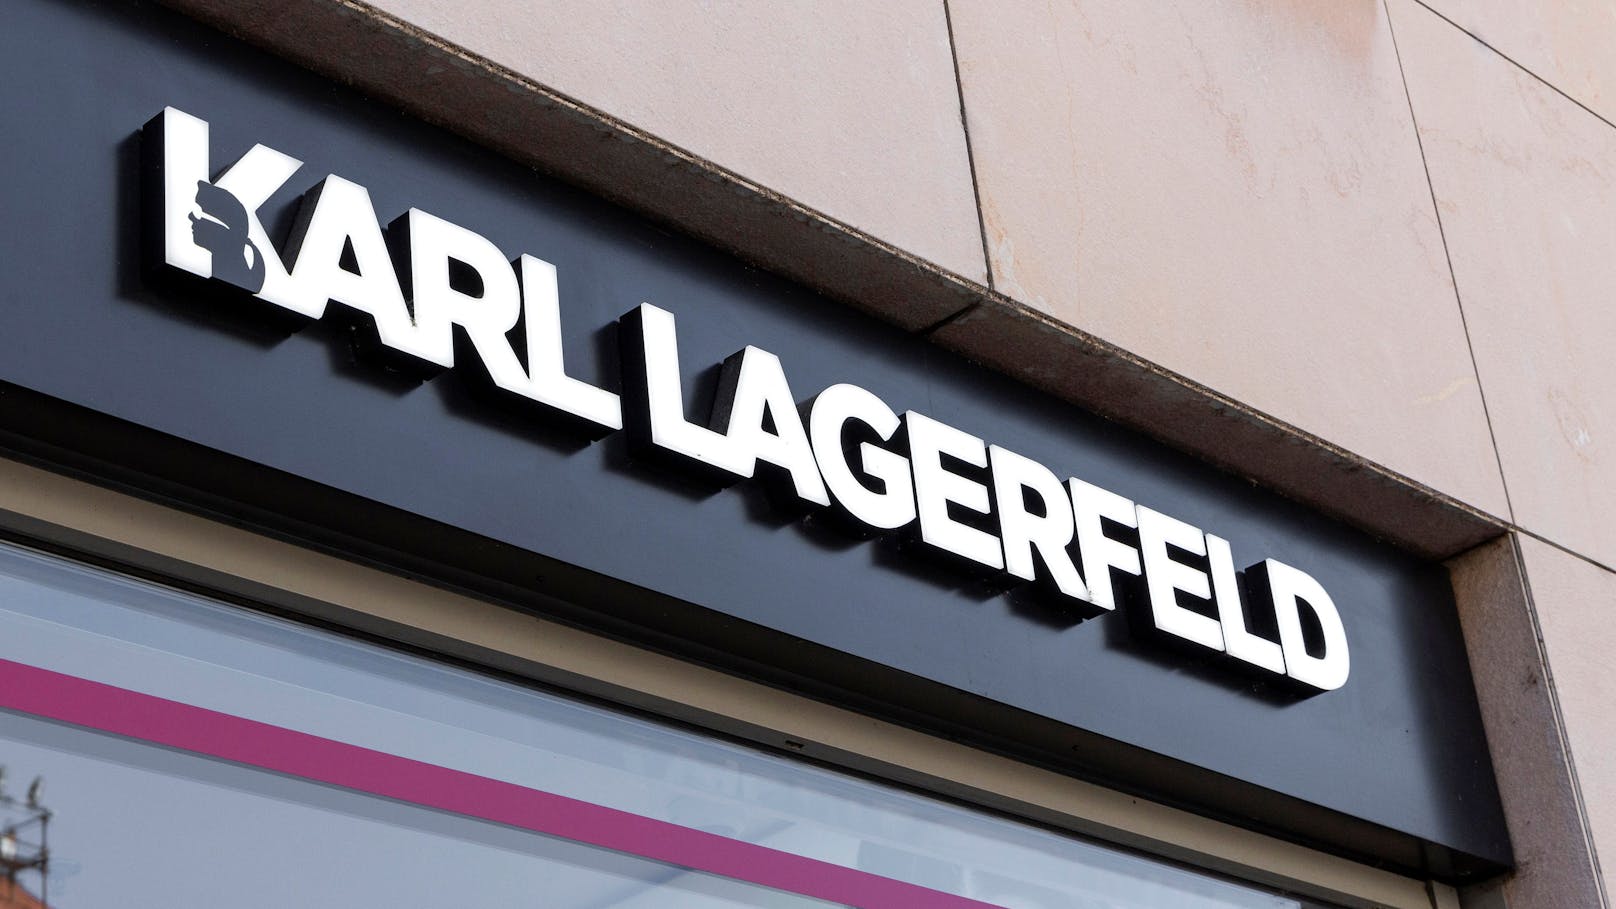 In Österreich gibt es vier Shops der Marke <strong>Karl Lagerfeld</strong> - zwei davon sind in Wien, ein Outlet jeweils in Salzburg und Parndorf (B).